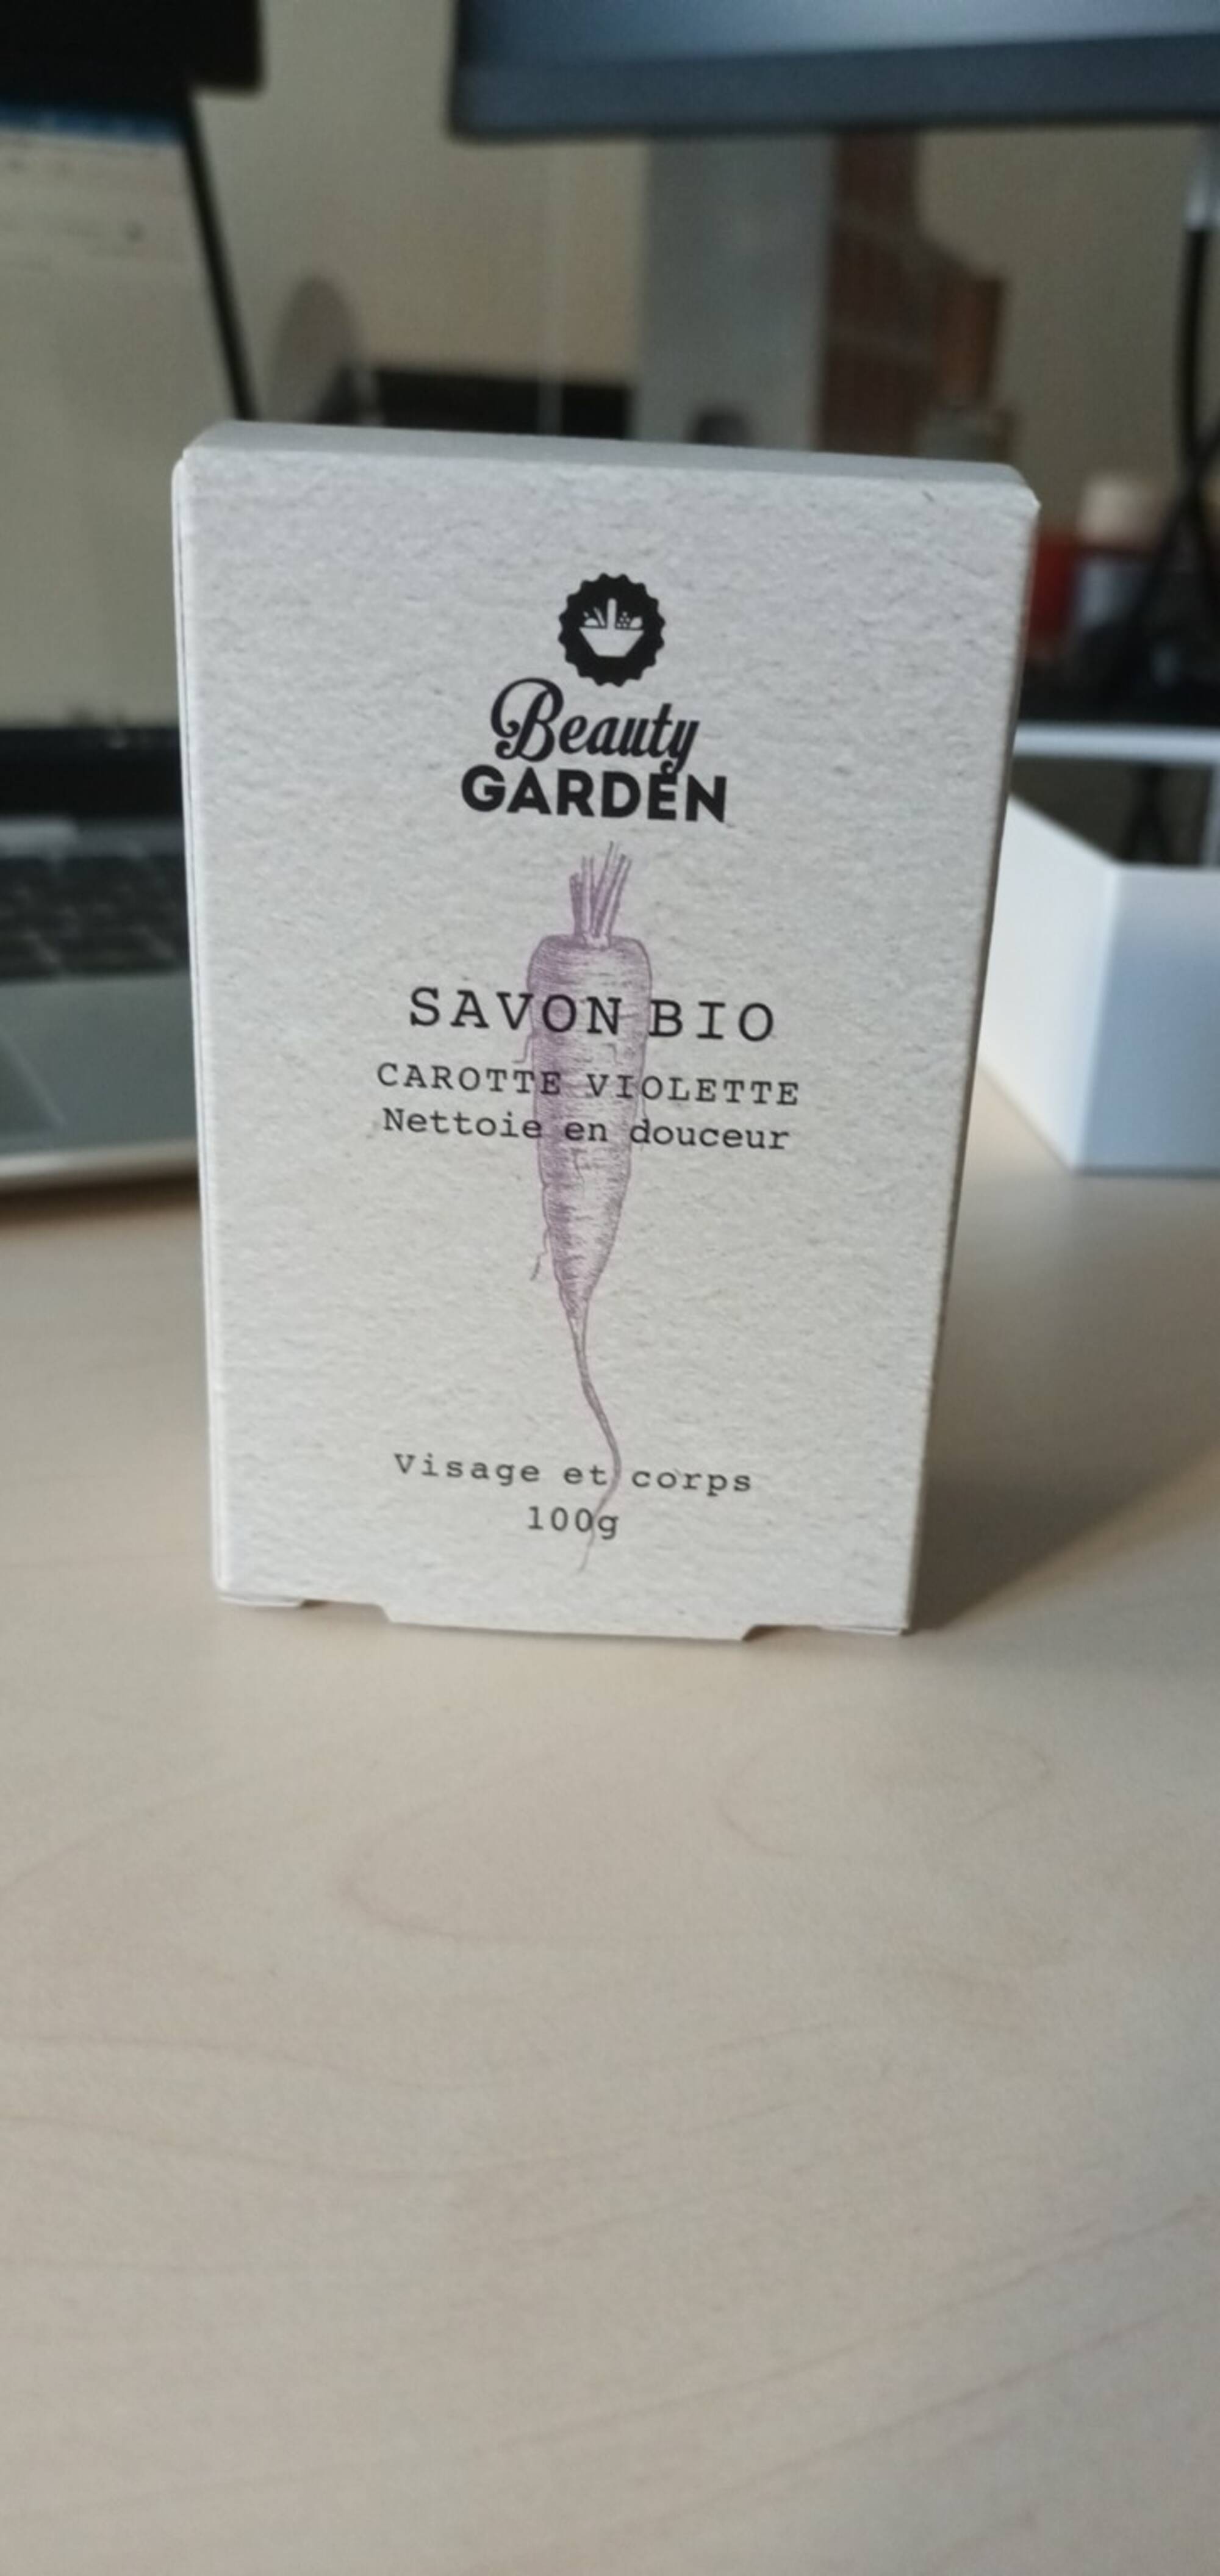 BEAUTY GARDEN - Savon bio carrotte violette